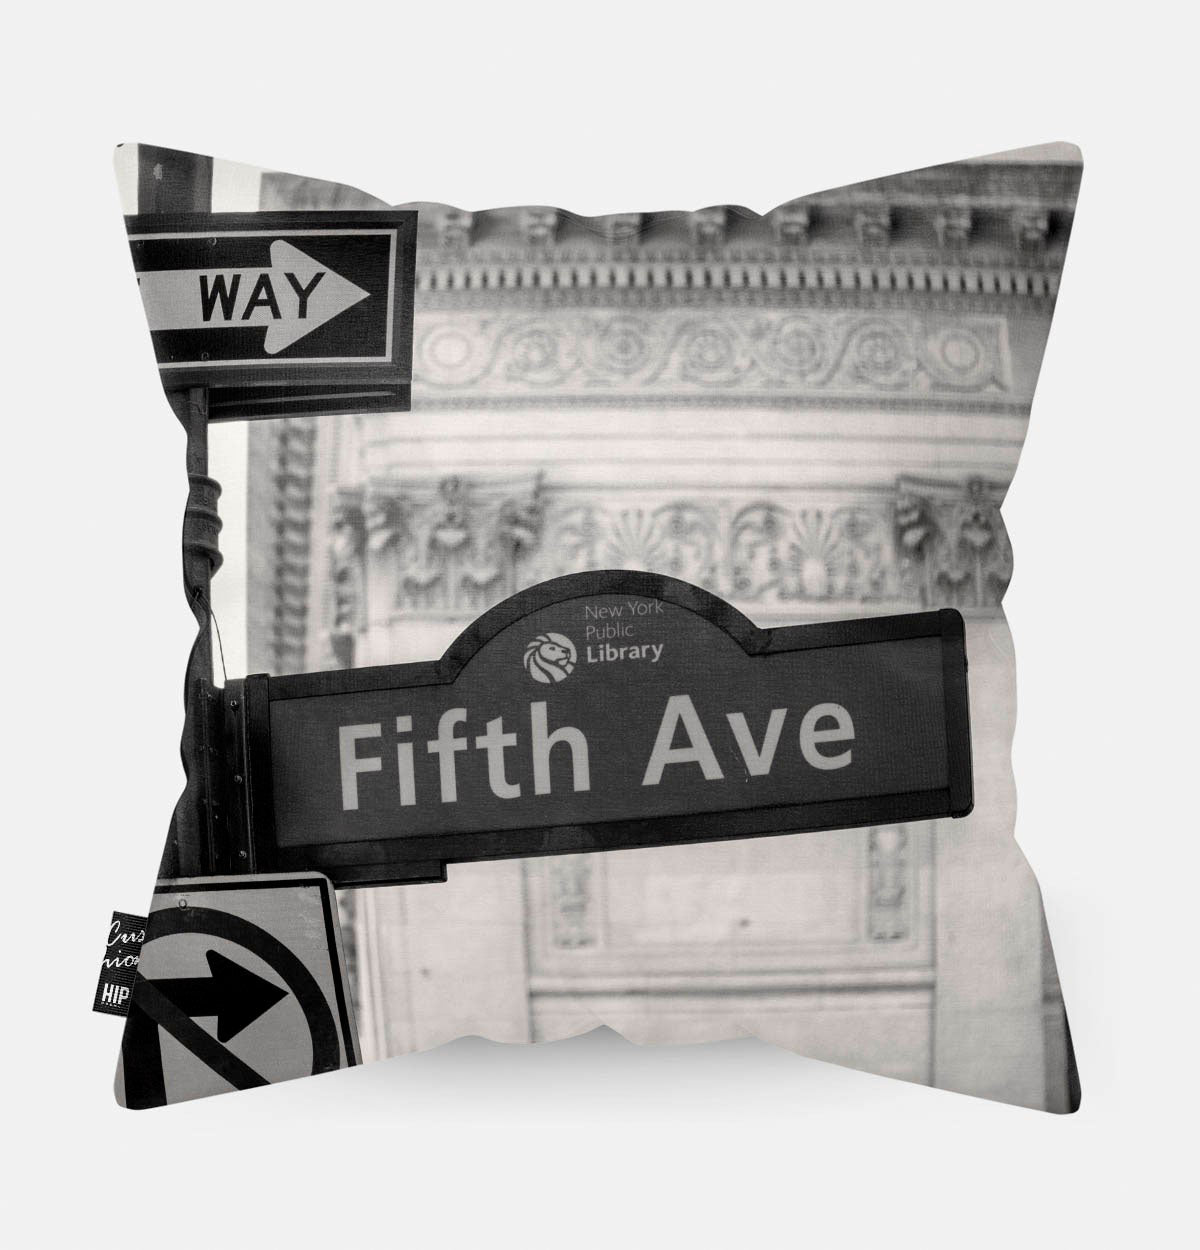 Kussen met Fifth Avenue in het zwart-wit erop.